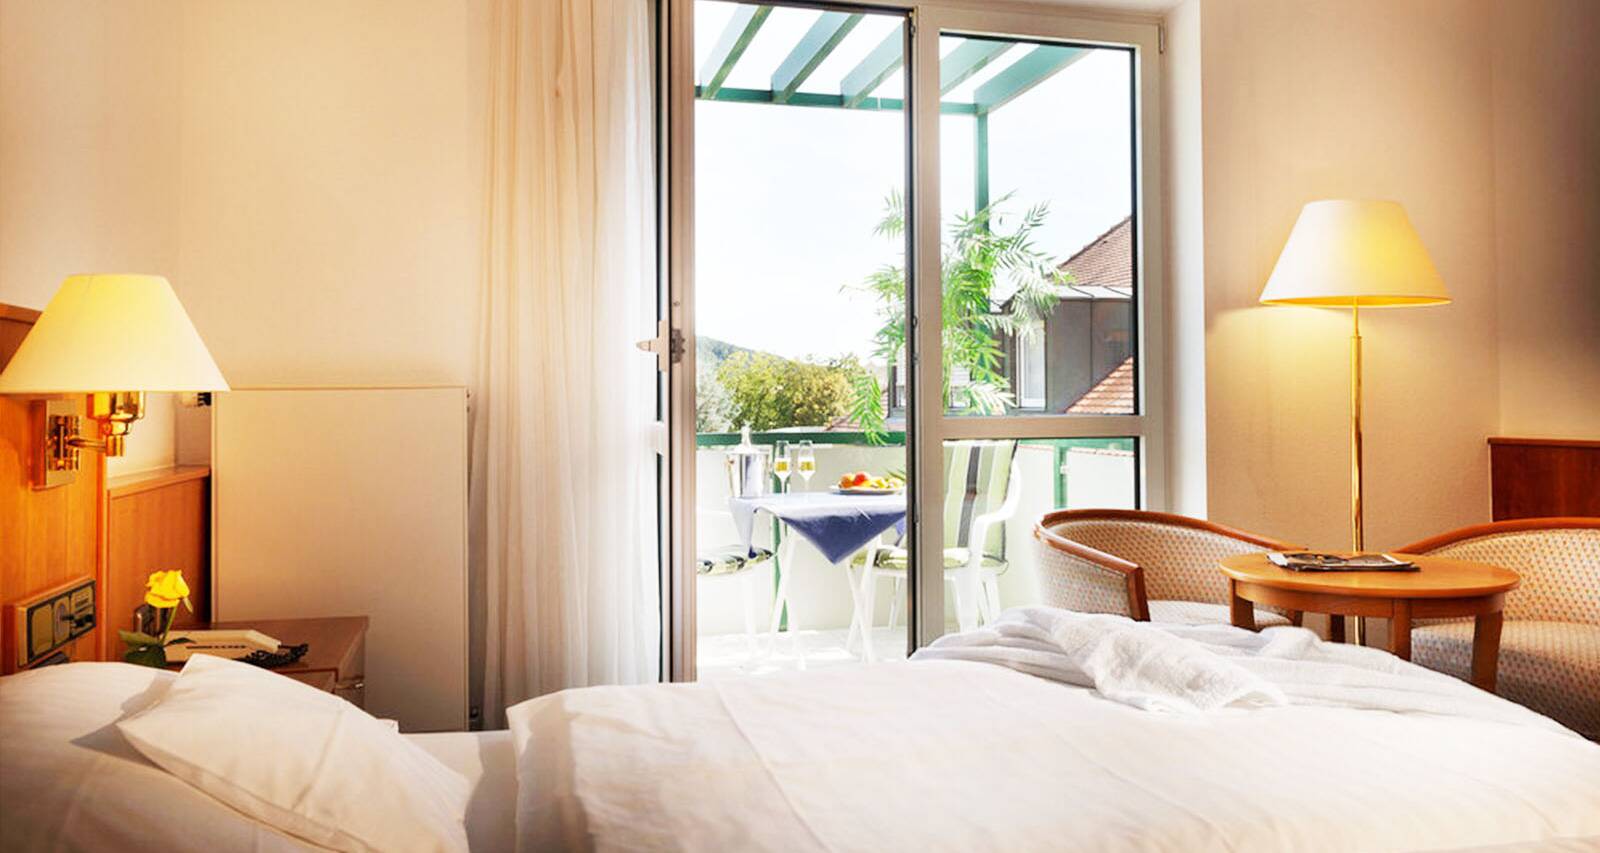 Viel Platz für zwei ermöglichen die Doppelzimmer-Komfort des Ayurveda-Hotels Fontana.